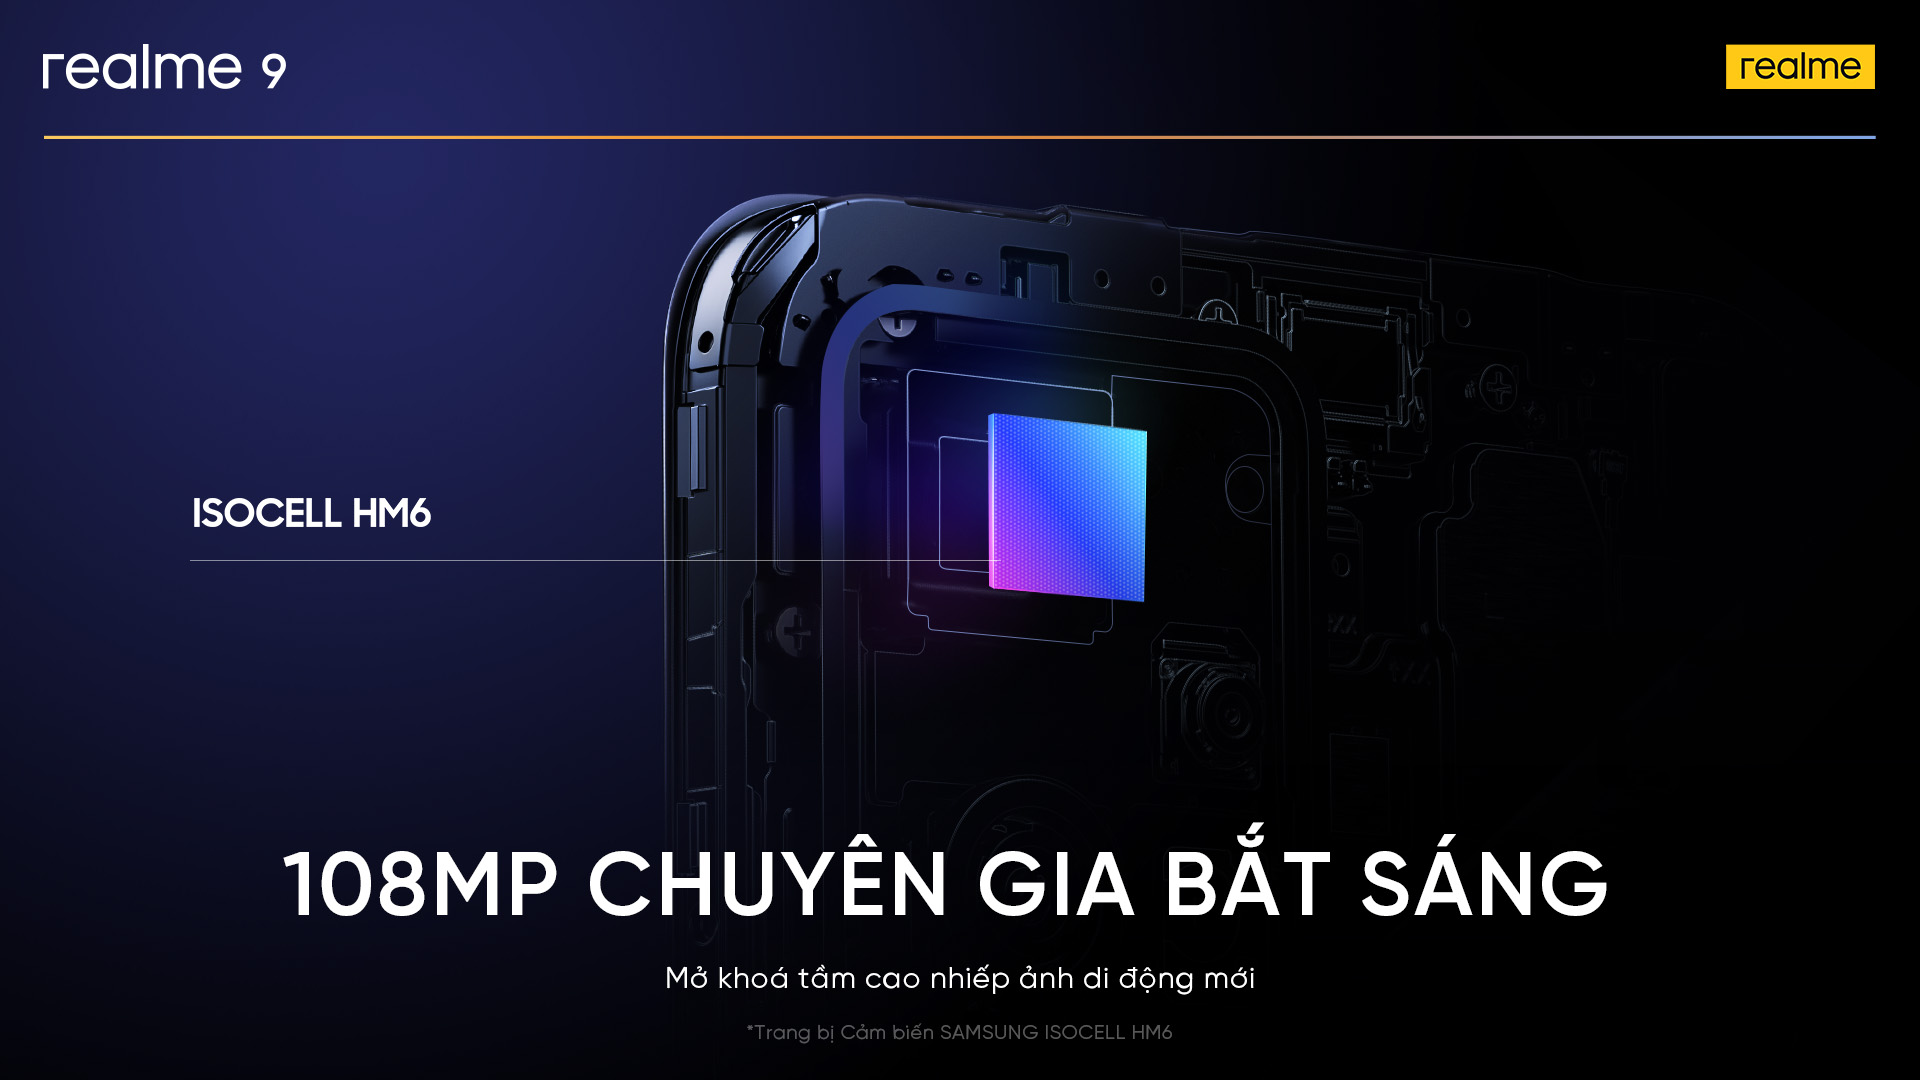 realme 9 4G: Smartphone đầu tiên thế giới có camera ProLight 108MP với cảm biến Samsung ISOCELL HM6